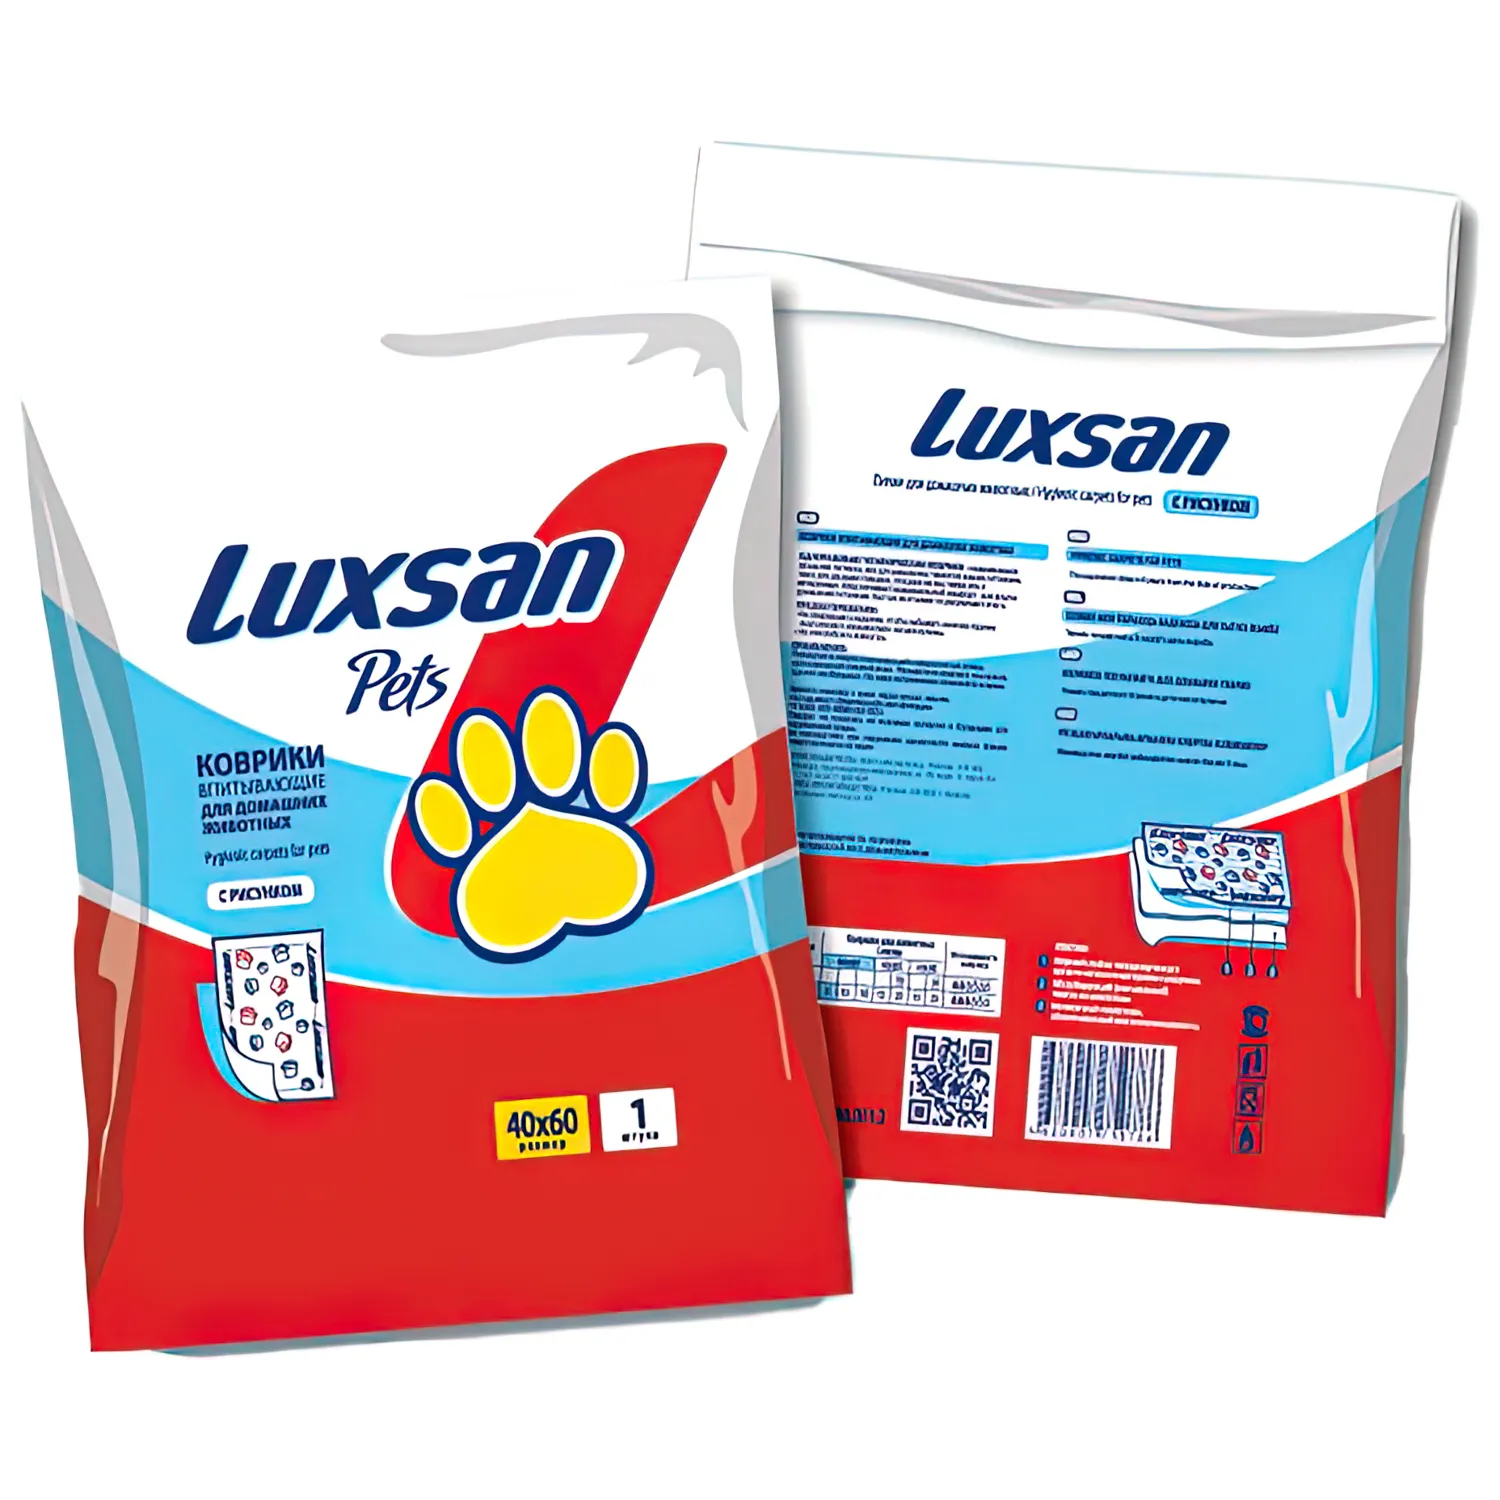 Коврики (пеленки) LUXSAN Premium для животных 40х60, 1 шт